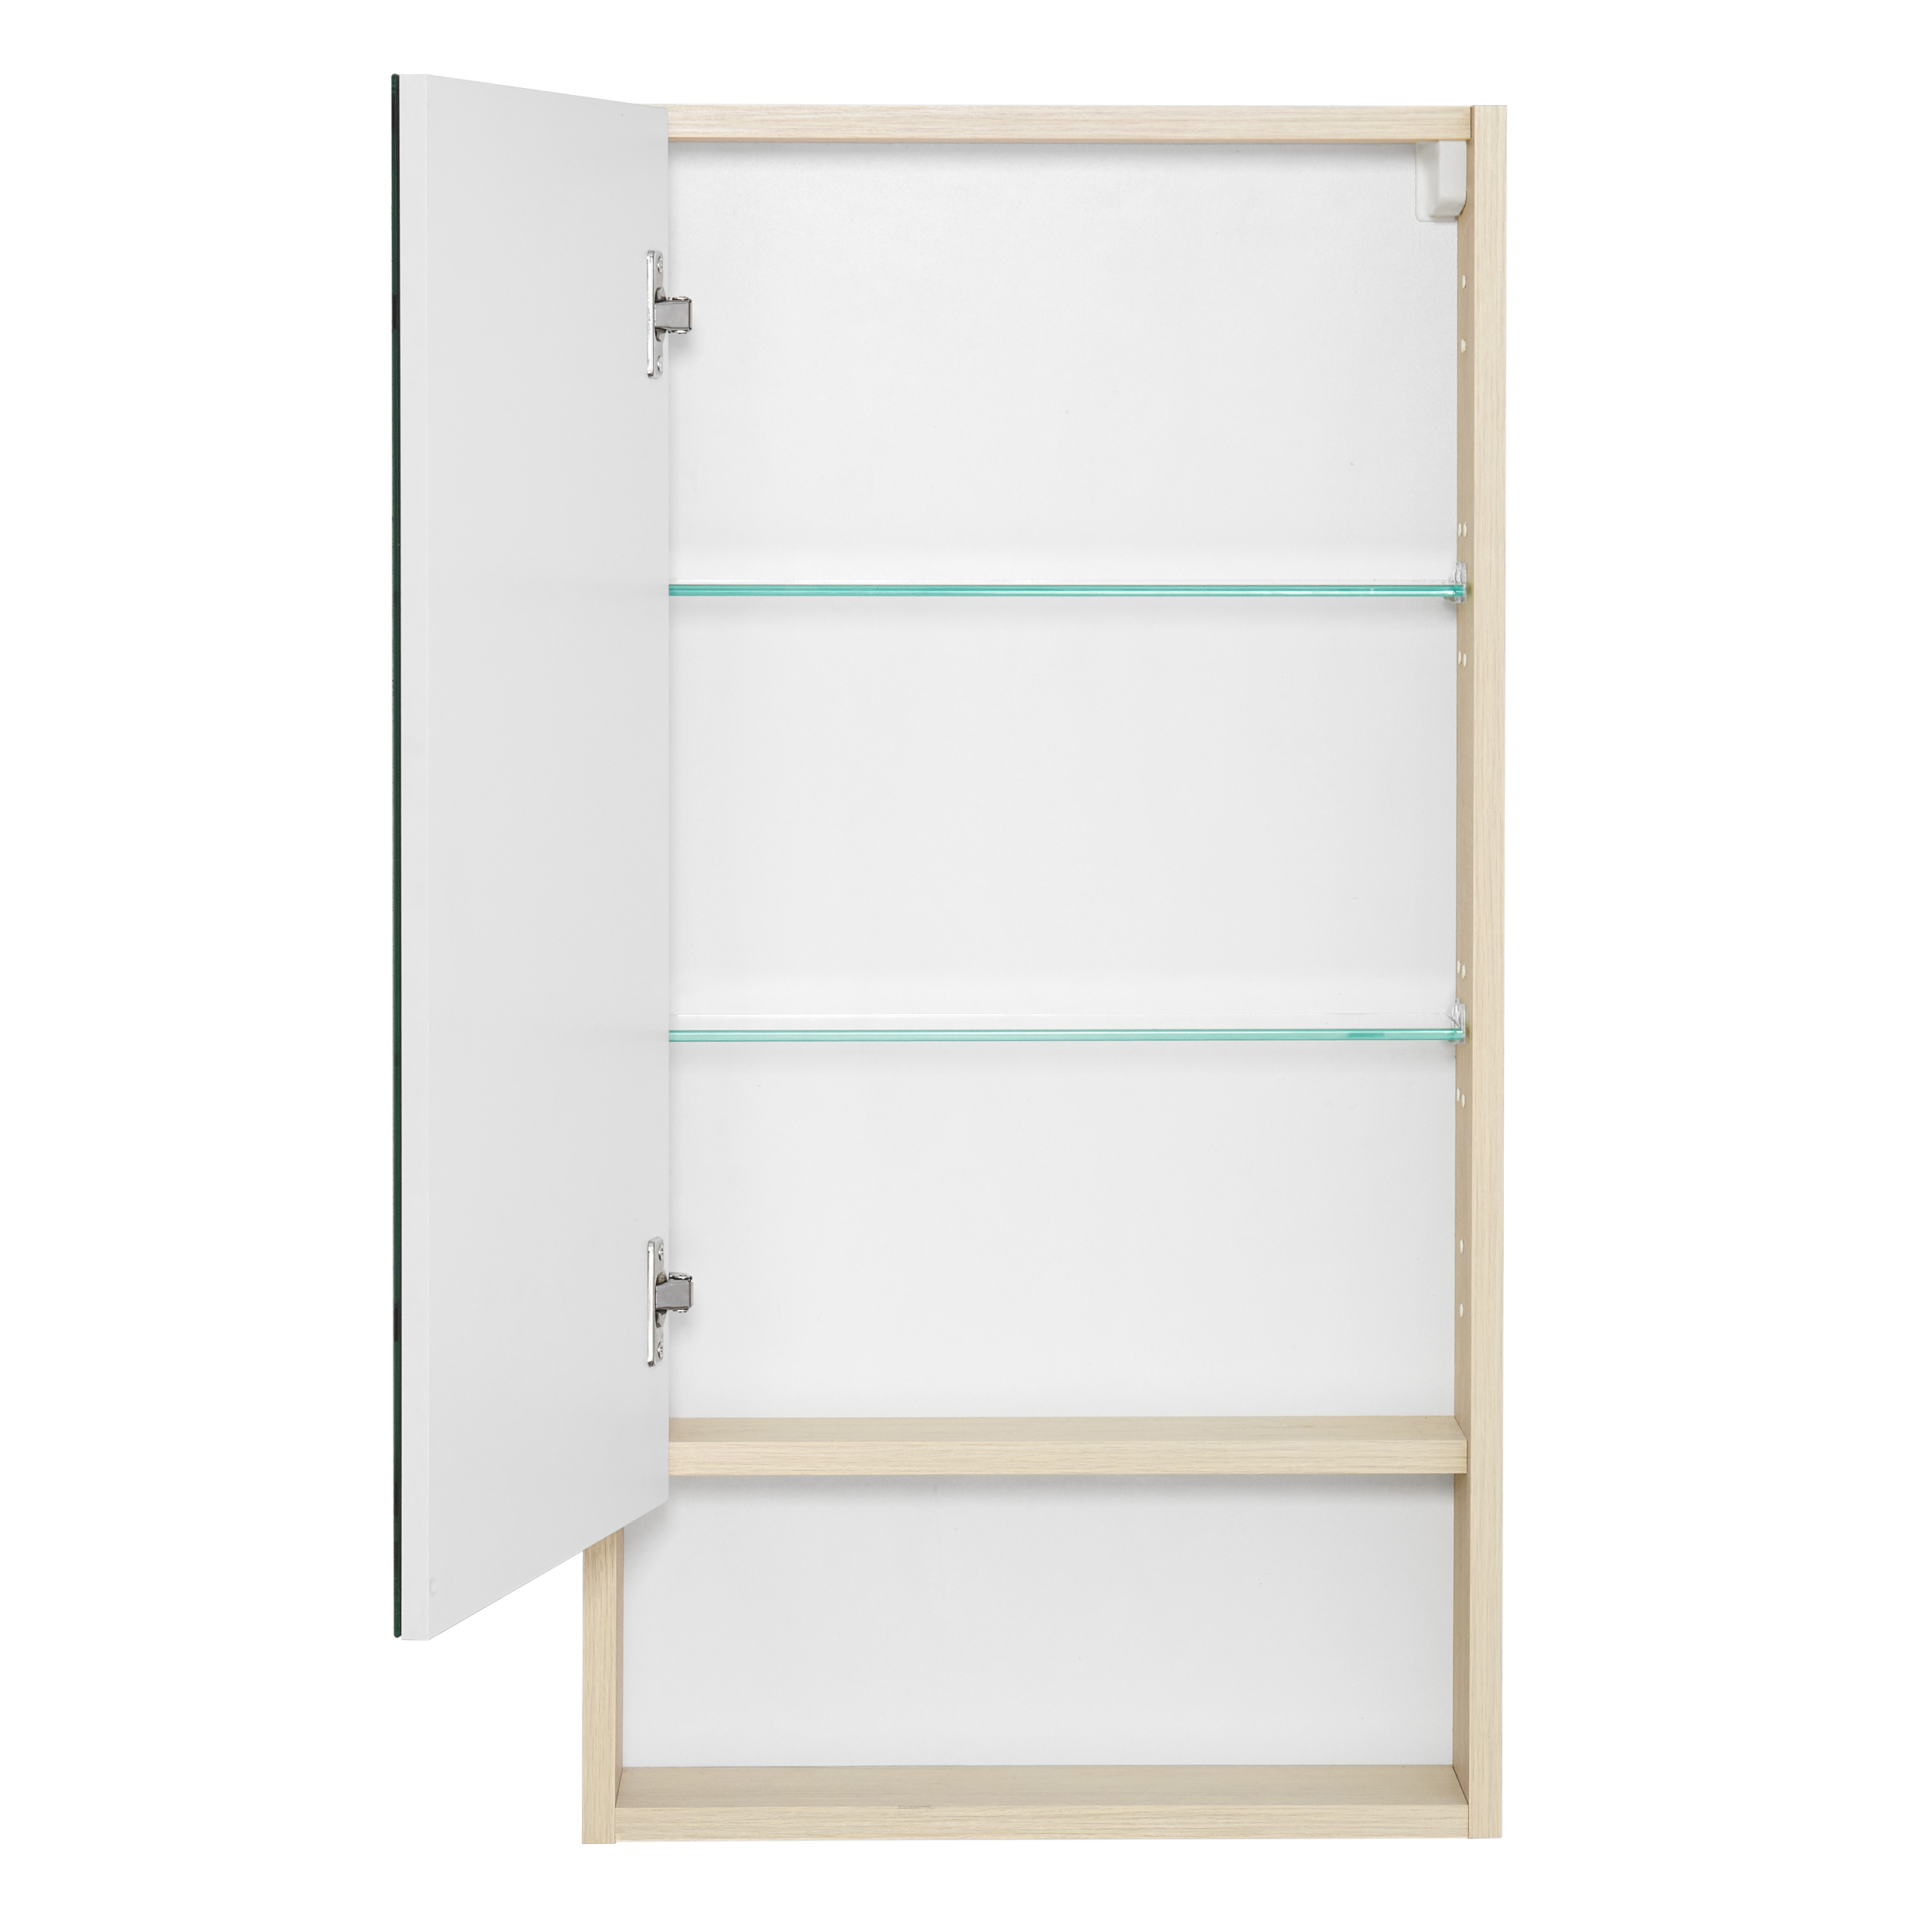 Зеркальный шкаф Акватон Сканди 1A252002SDB20 45 см, белый, цвет дуб - фото 2